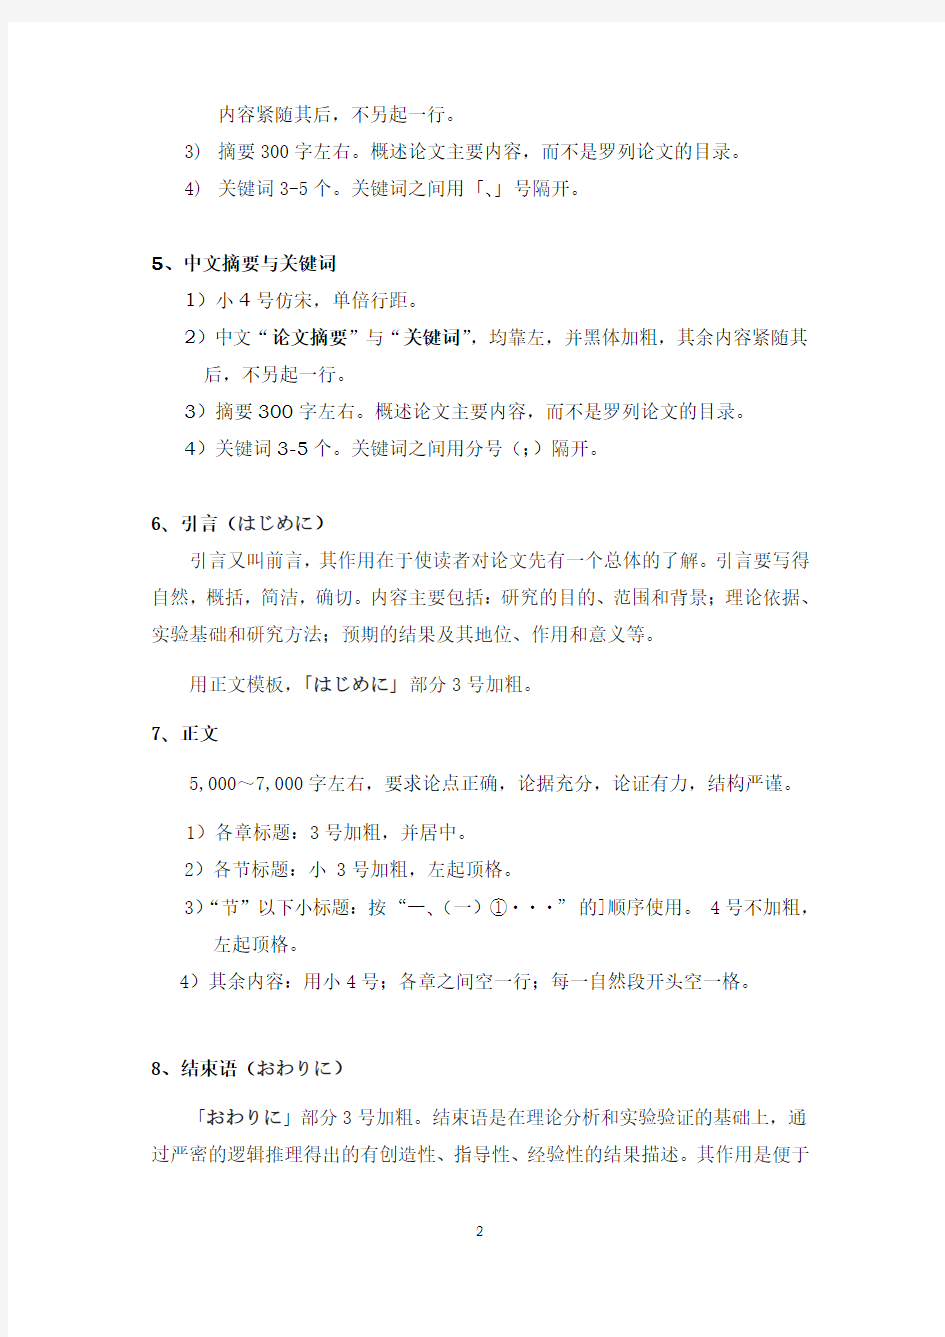 日语专业毕业论文格式与要求-2012版